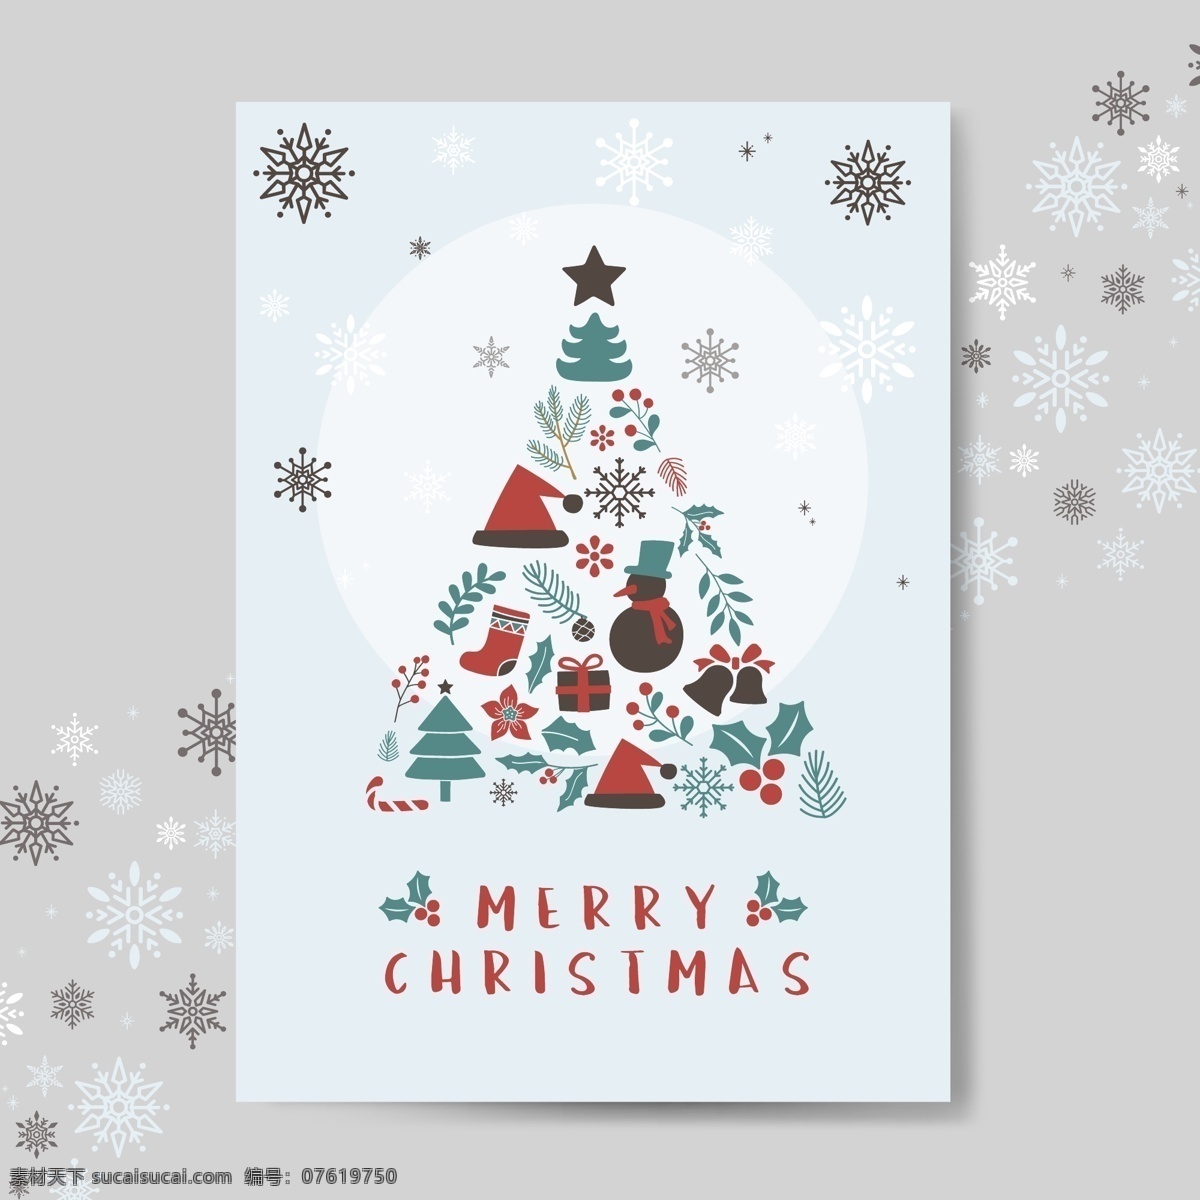 圣诞 元素 贺卡 背景 圣诞节 节日 树木 装饰 圣诞元素